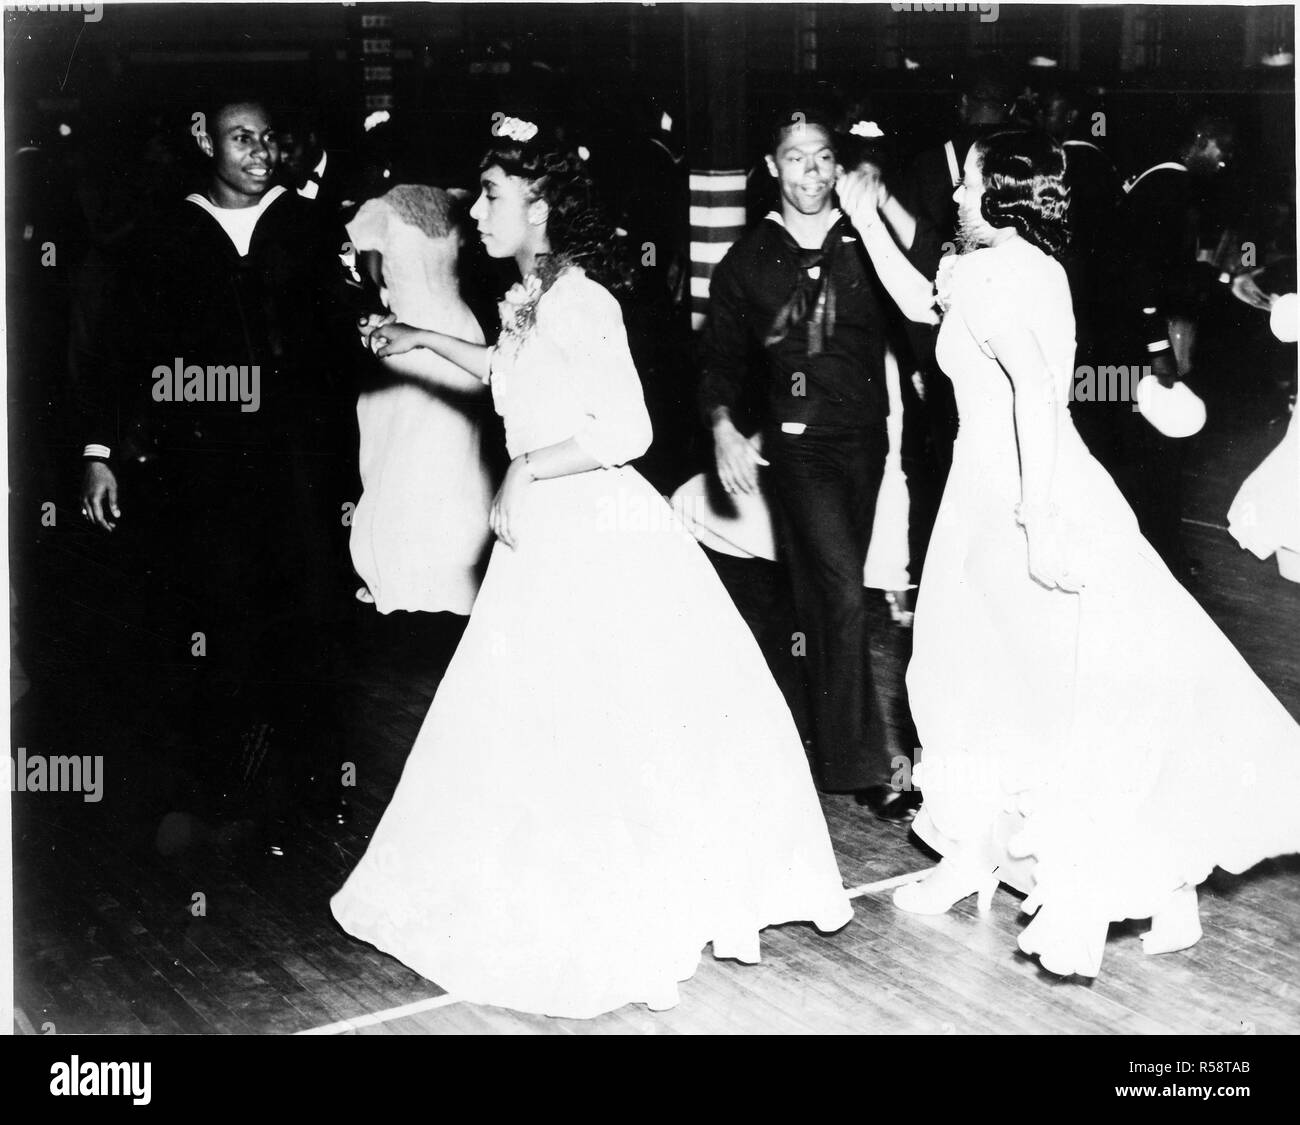 6/30/1943 - Originale Bildunterschrift: 30. Juni 1943 - Tanz an der Grenze Ausgangspunkt für Negro Personal. (Portland, Me) 40 Mädchen aus Boston. Negro Band aus Squantum Naval Station oder Quonset. Stockfoto